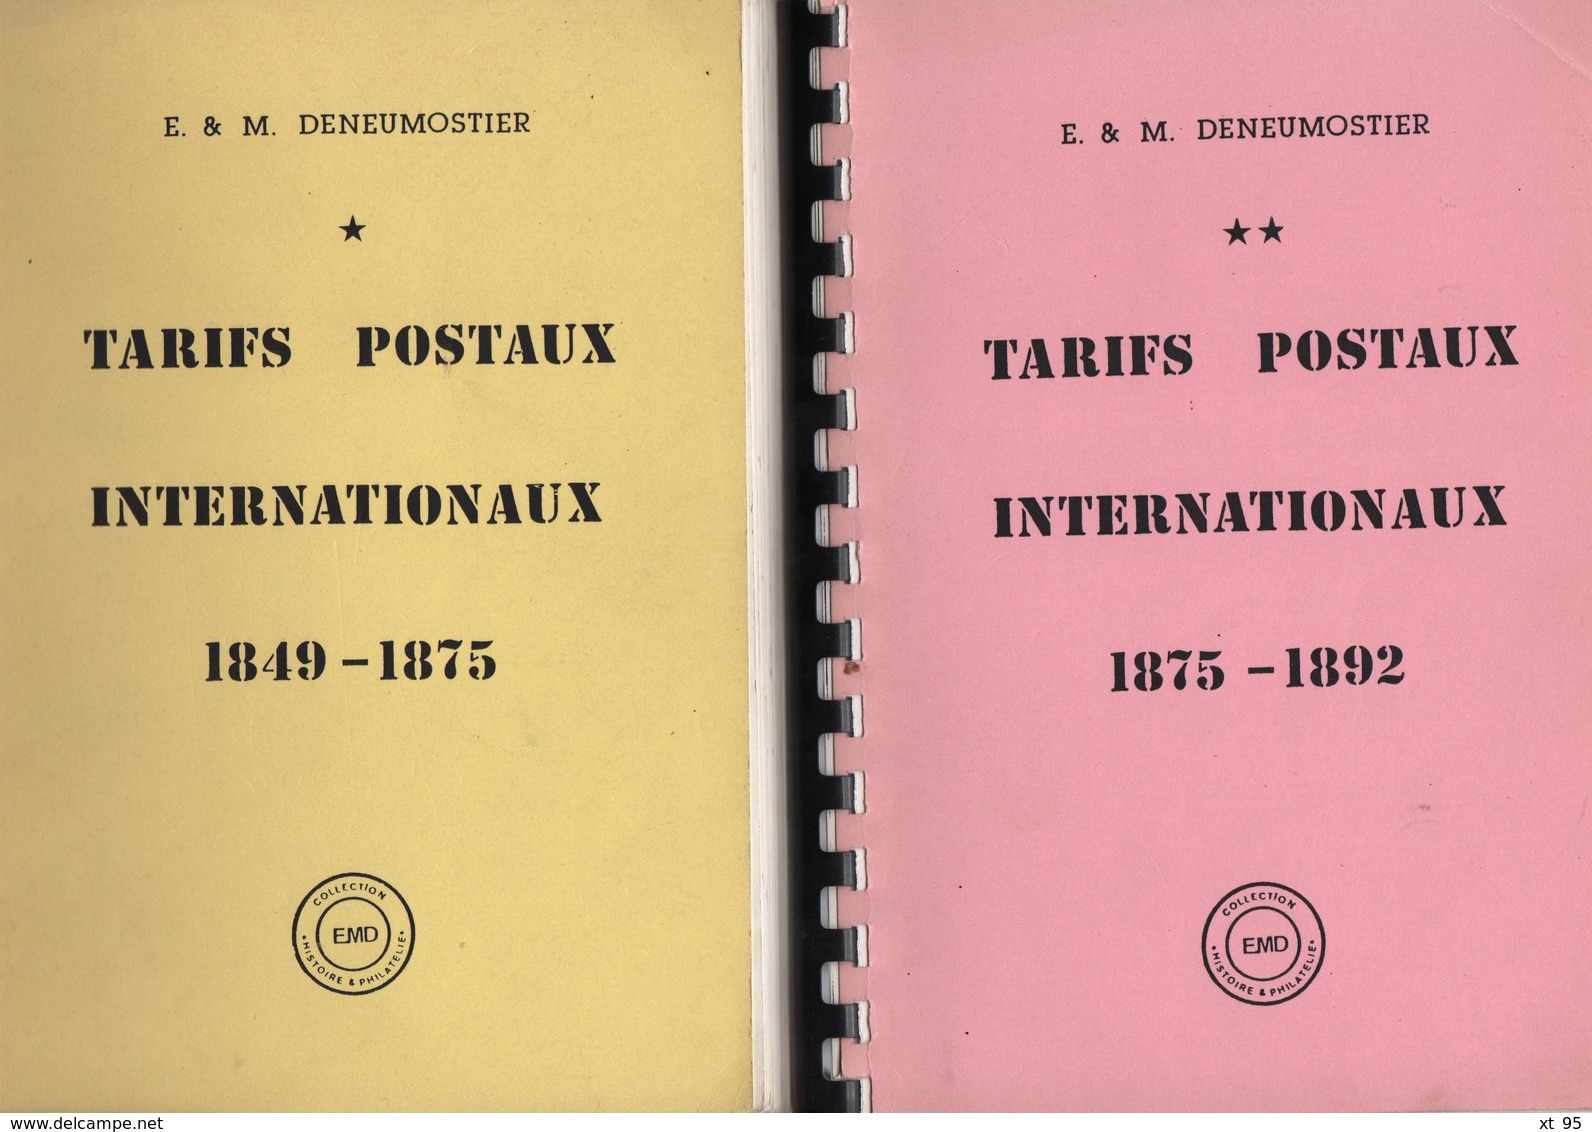 Belgique - Tarifs Postaux Internationaux Tome 1 Et 2 - Deneumostier - Frais De Port 6.50 Euros - Tarifs Postaux